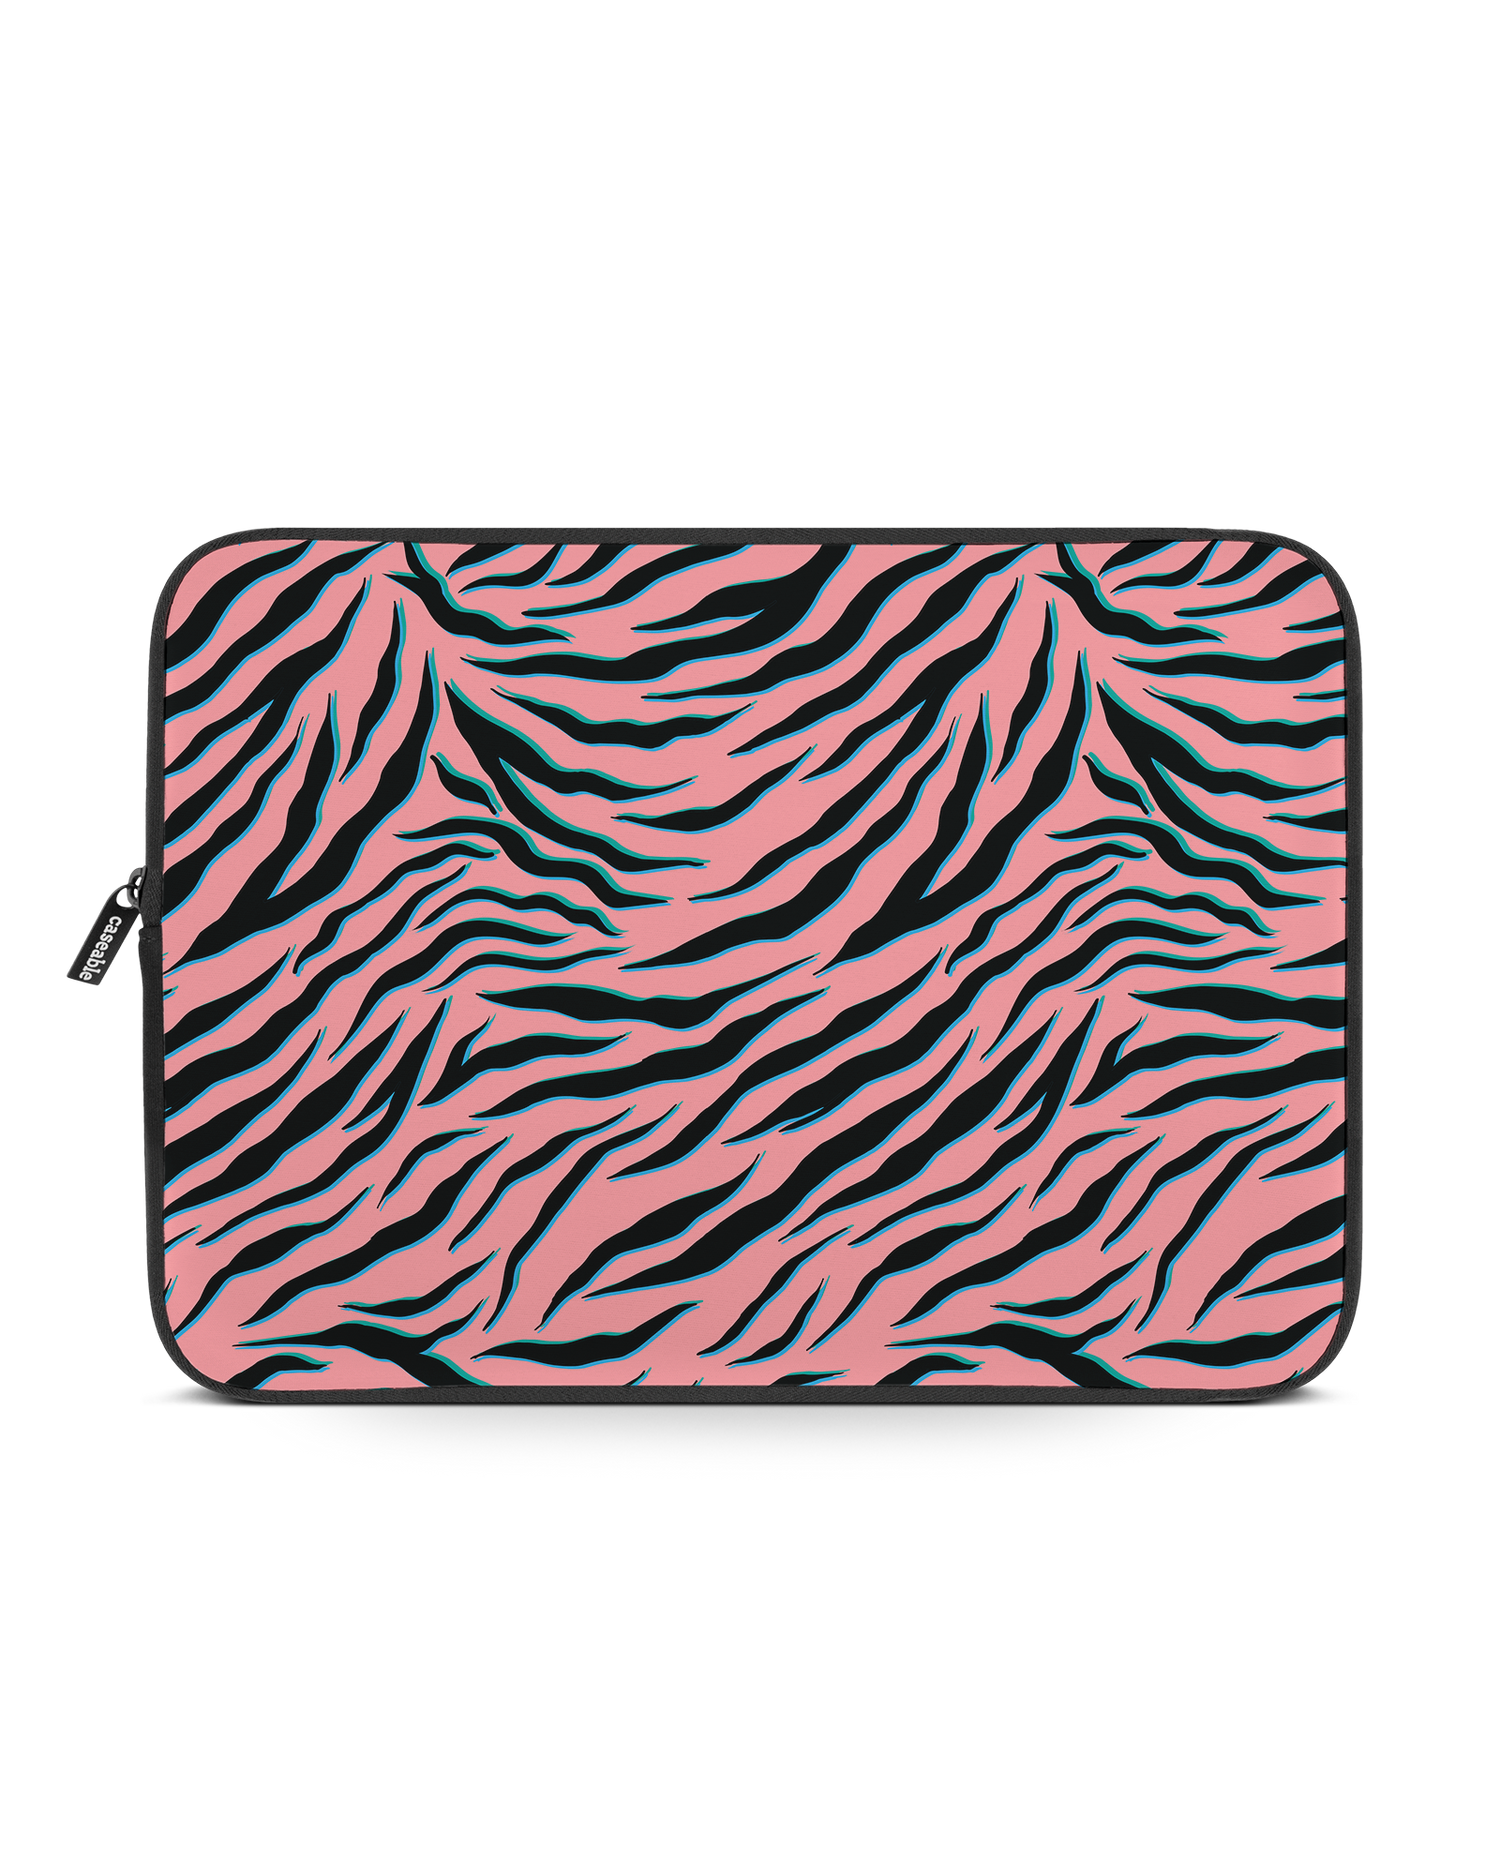 Pink Zebra Laptophülle 14-15 Zoll: Vorderansicht